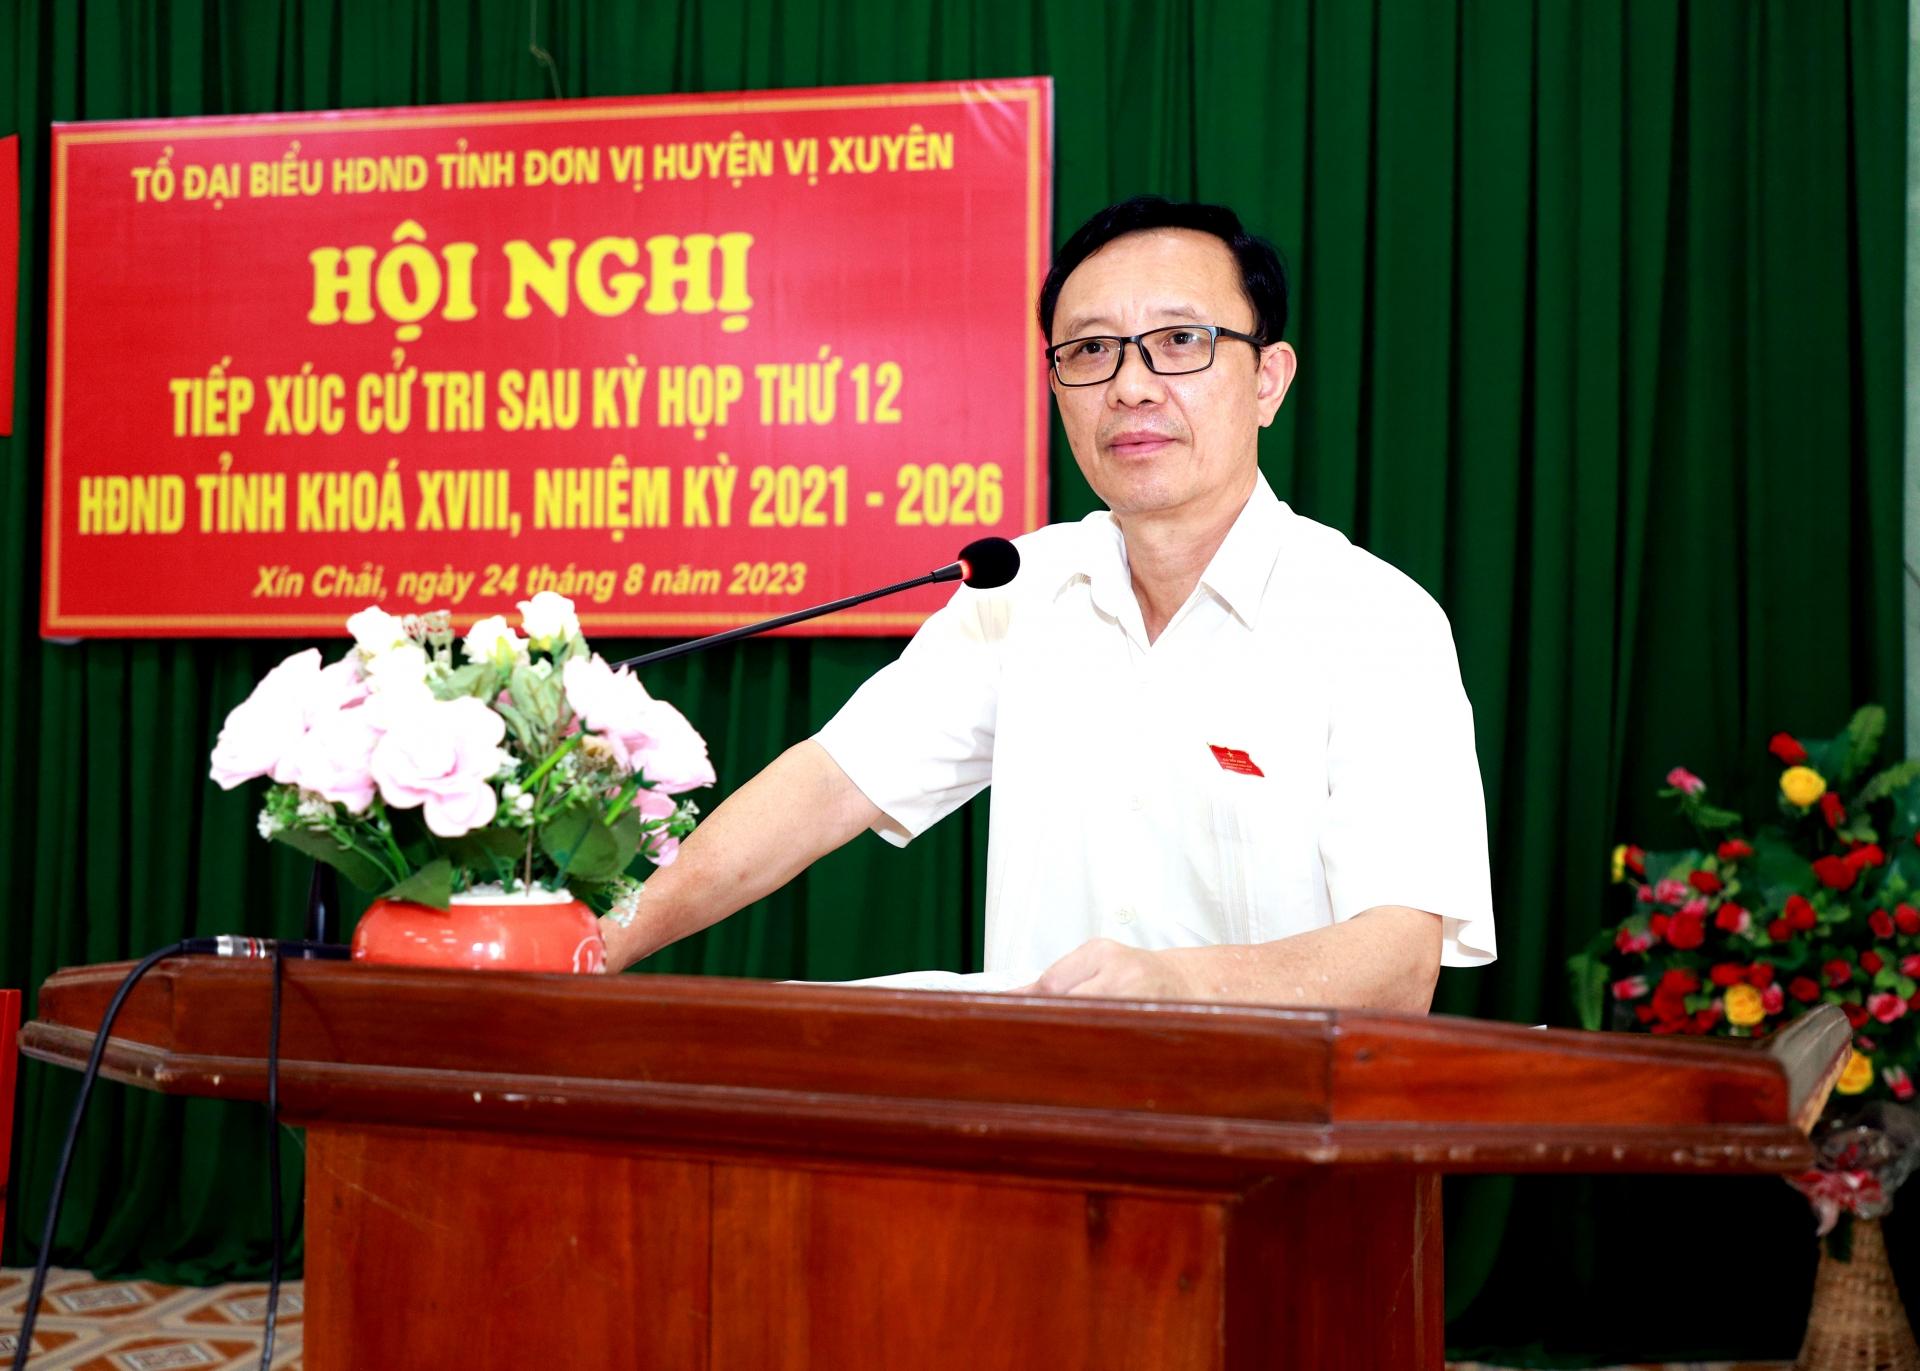 Phó Bí thư Thường trực Tỉnh ủy, Chủ tịch HĐND tỉnh Thào Hồng Sơn phát biểu tại buổi TXCT các xã Xín Chải, Thanh Đức.